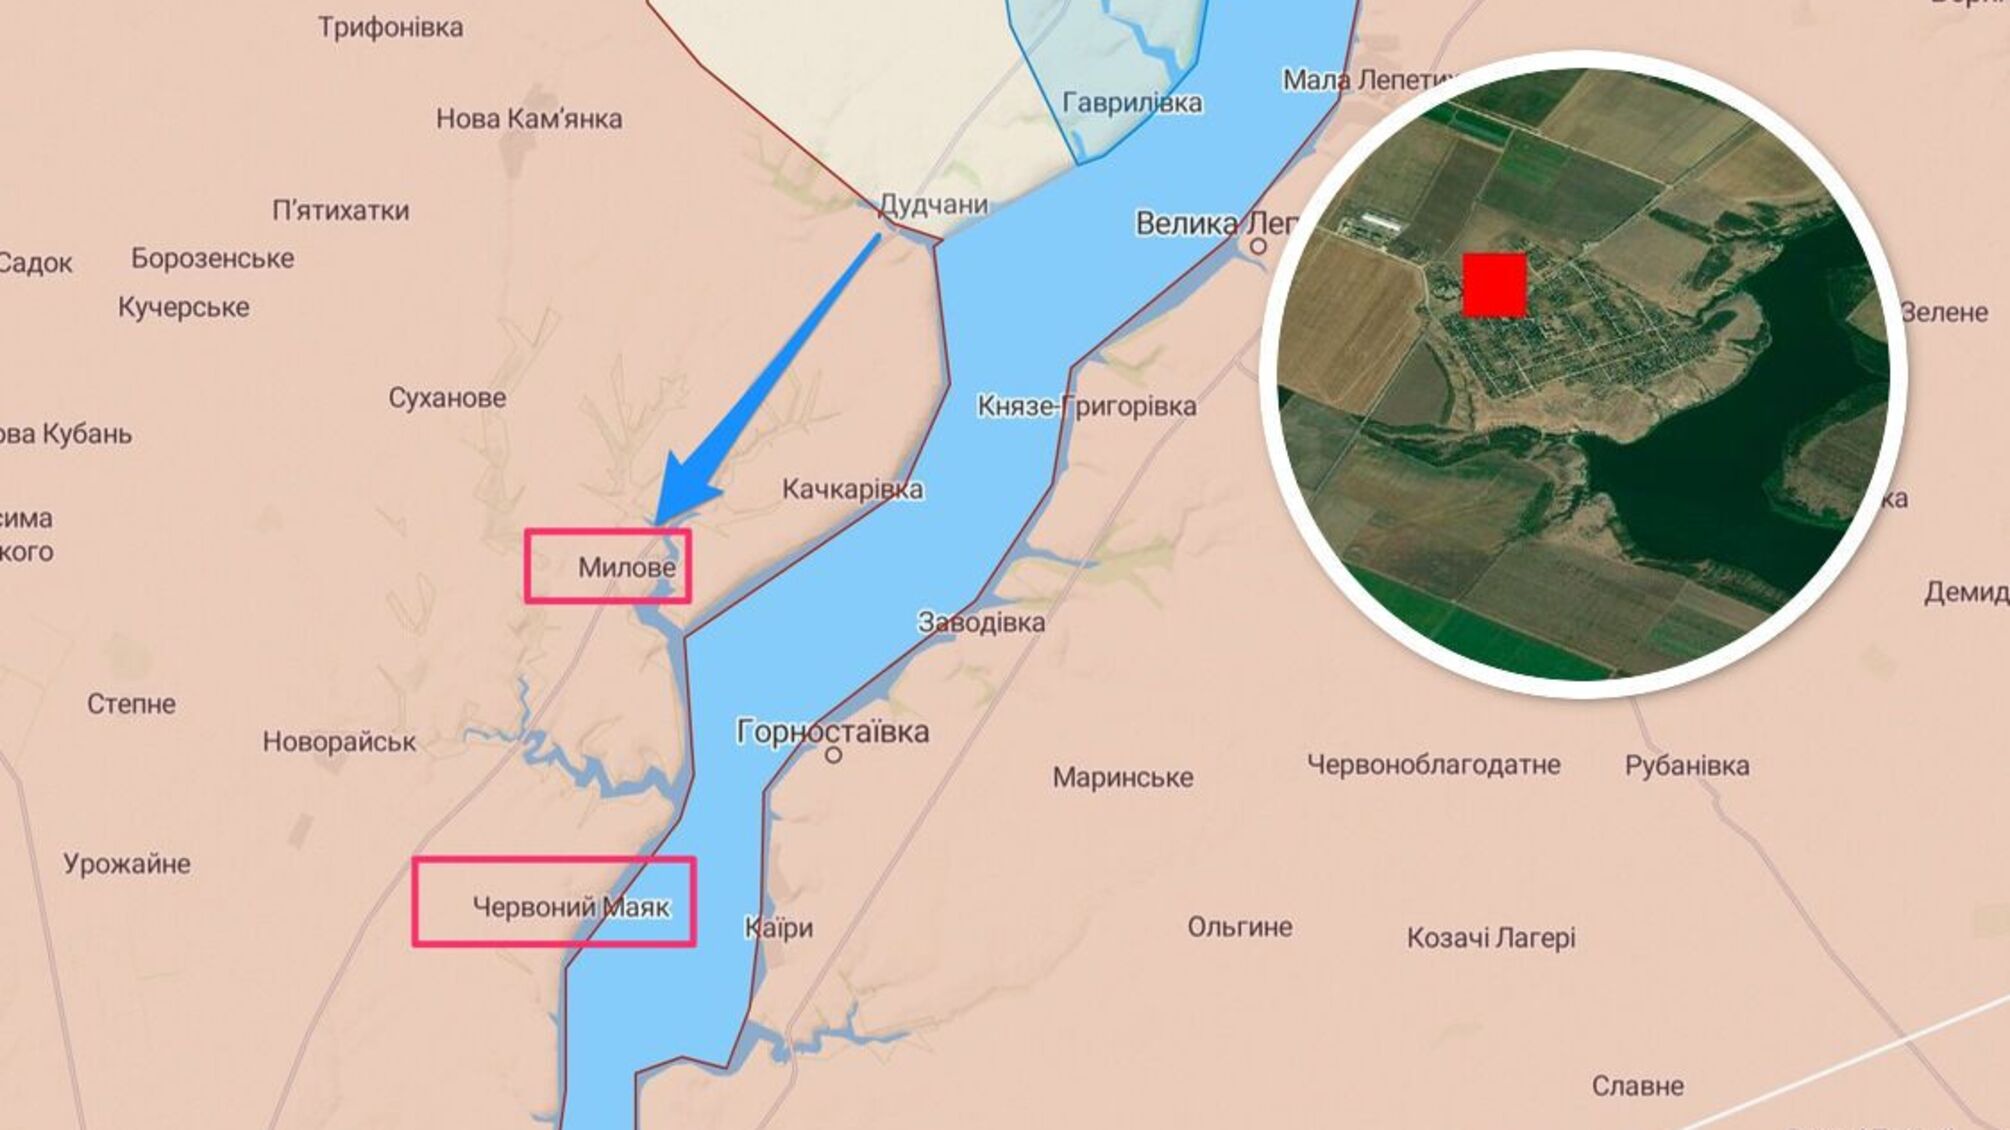 Херсонщина: в Мыловом 'подгорела' база оккупантов, россияне могут забаррикадироваться в Бизюковом монастыре